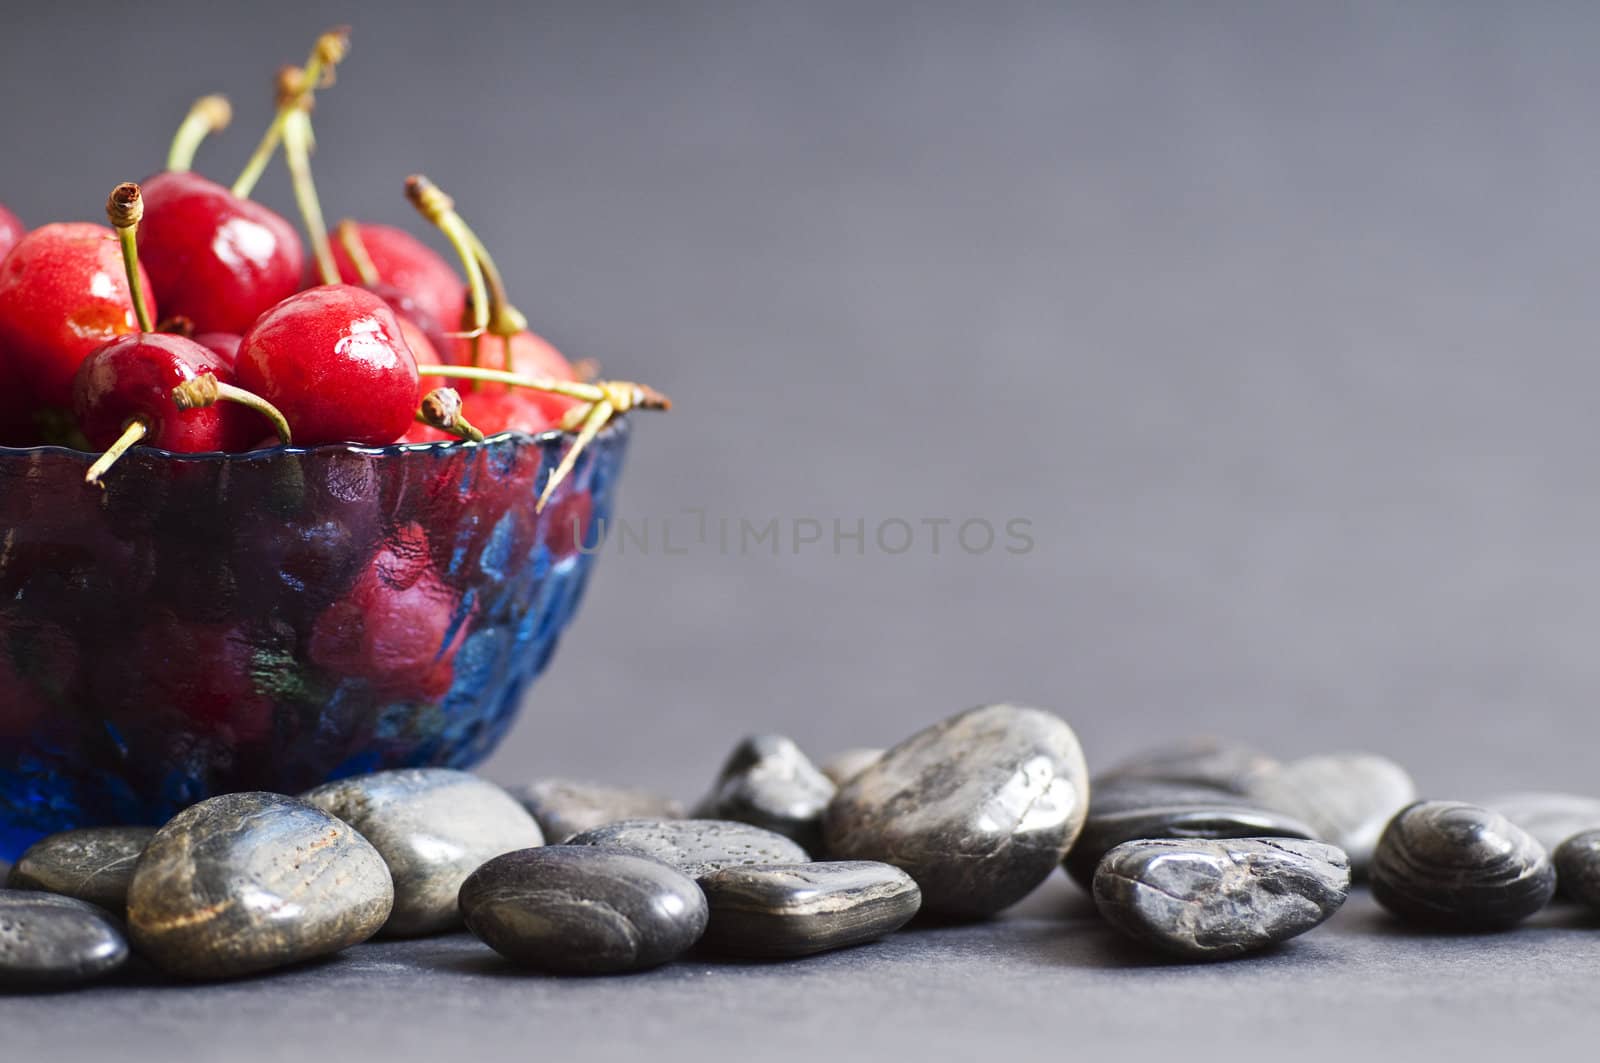 jar with cherries by peus